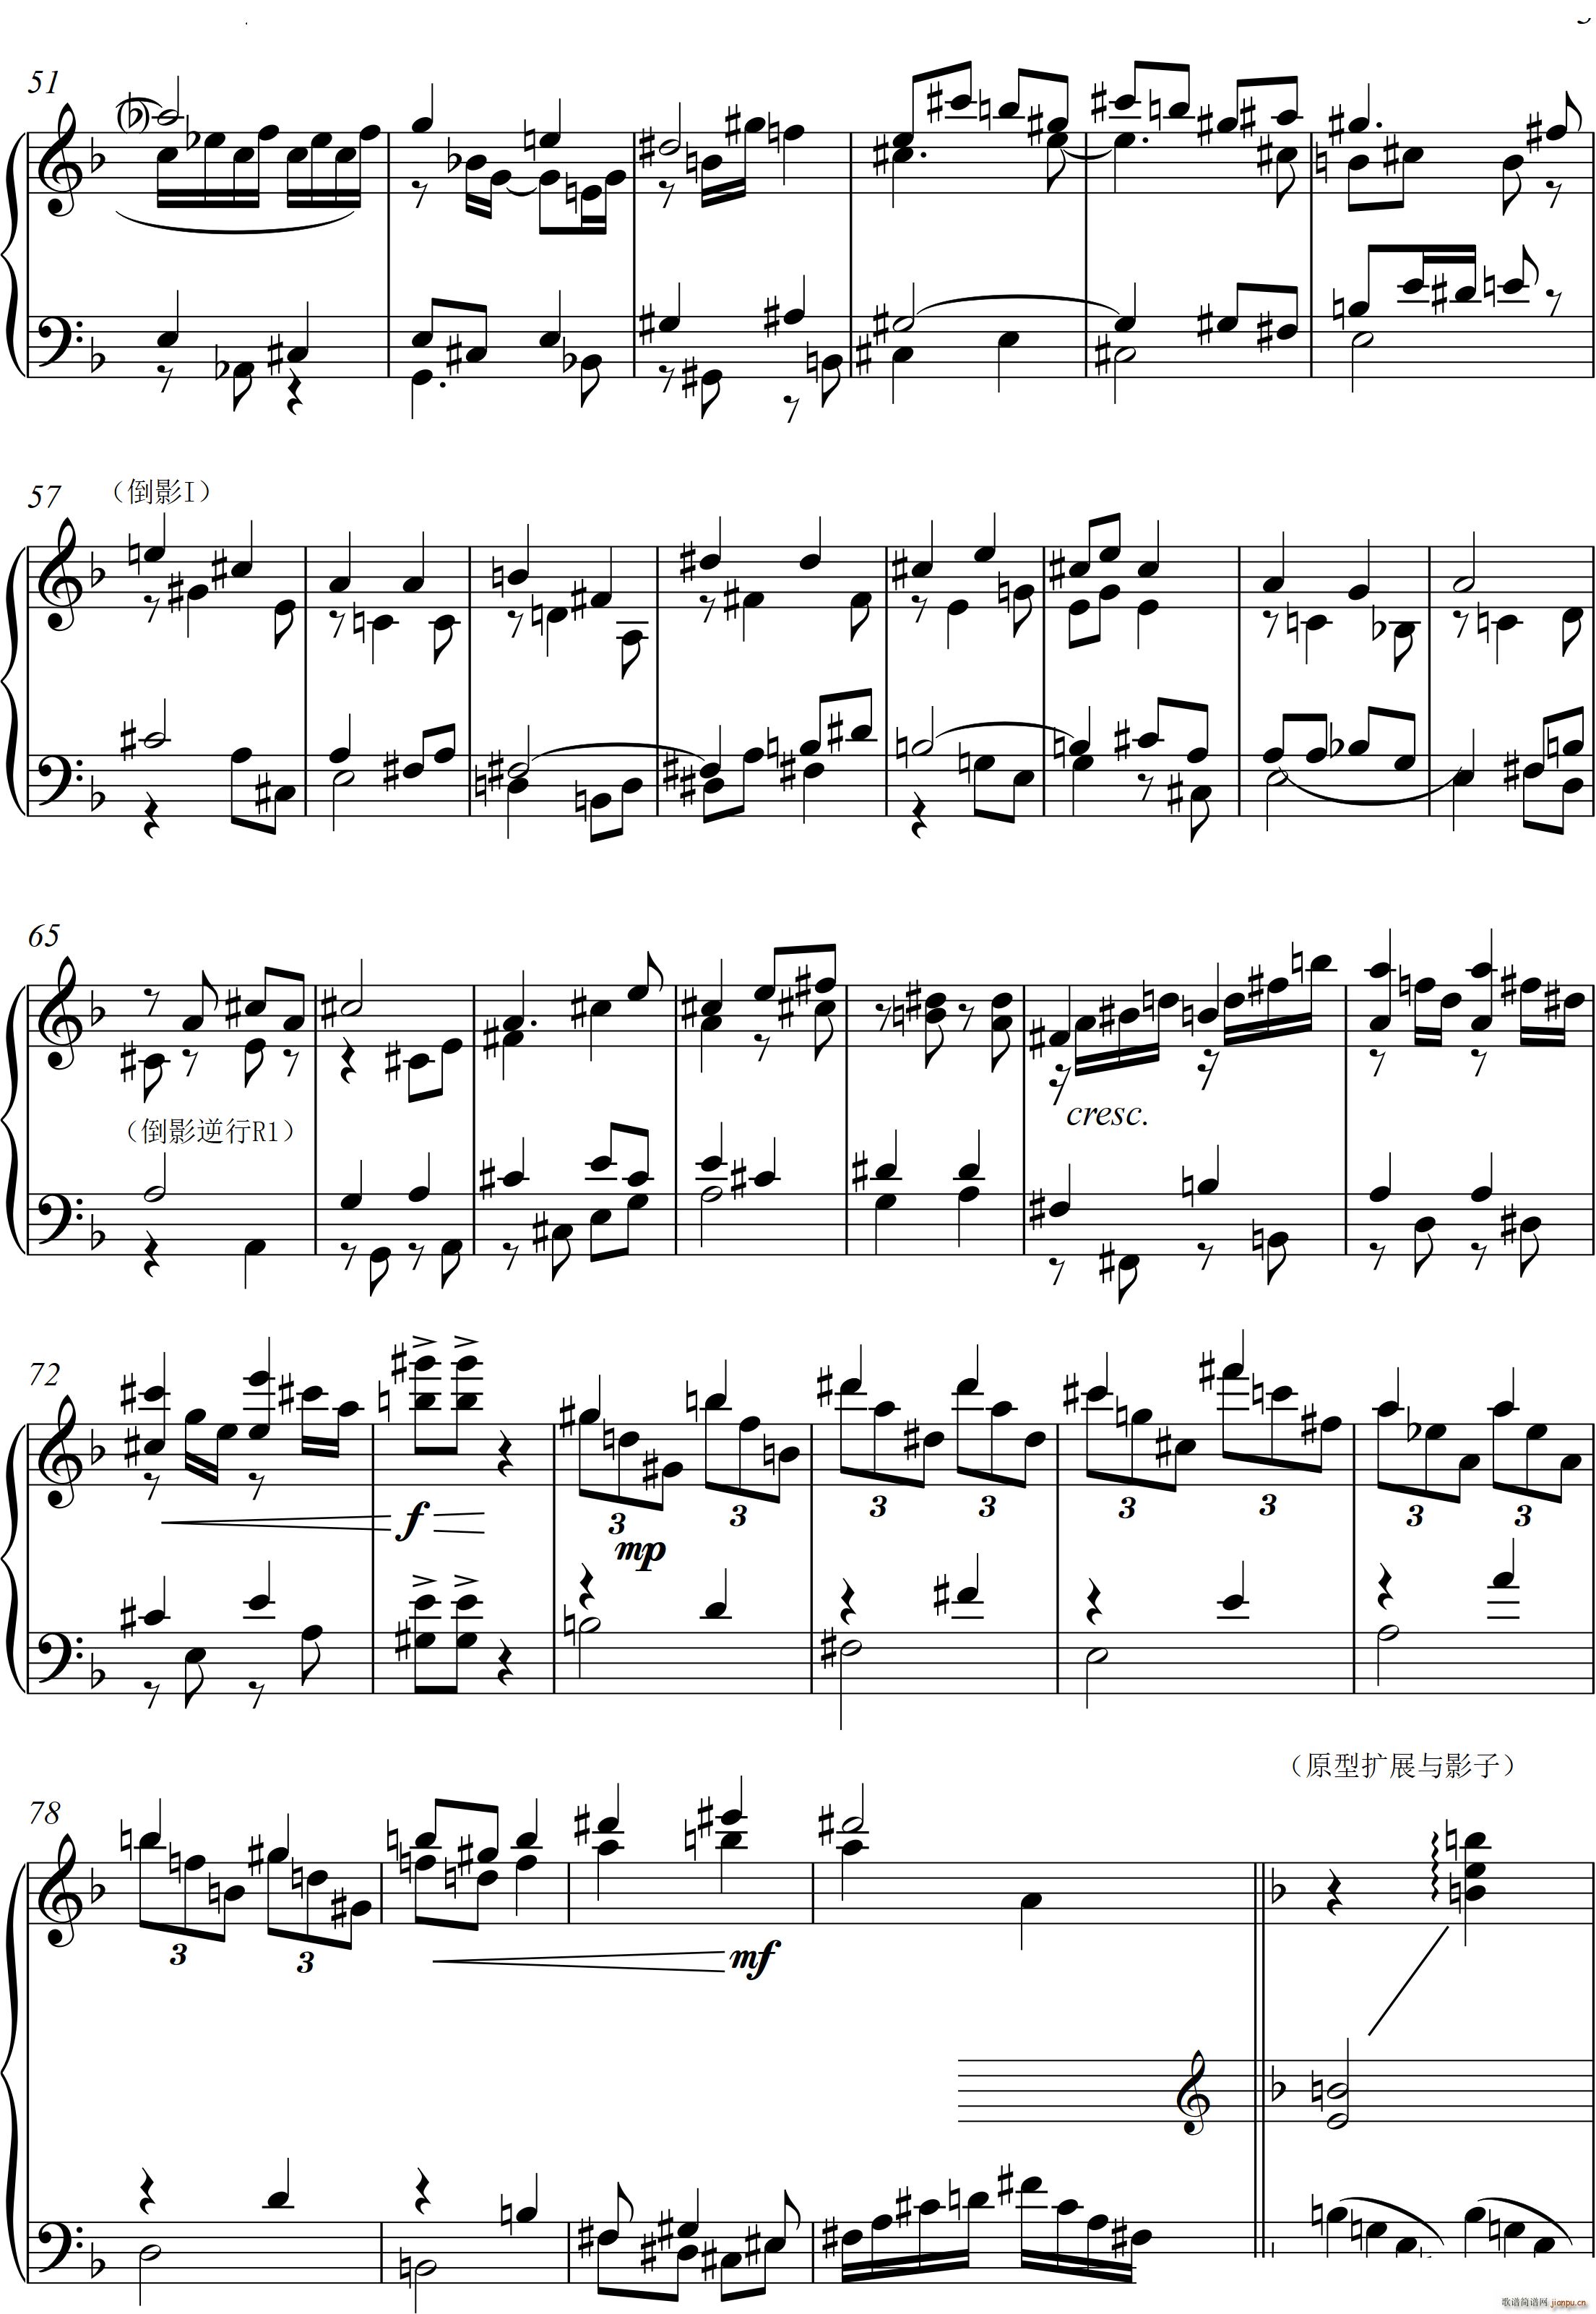 第22钢琴奏鸣曲 信仰 Piano Sonata No`22四个乐章(钢琴谱)25